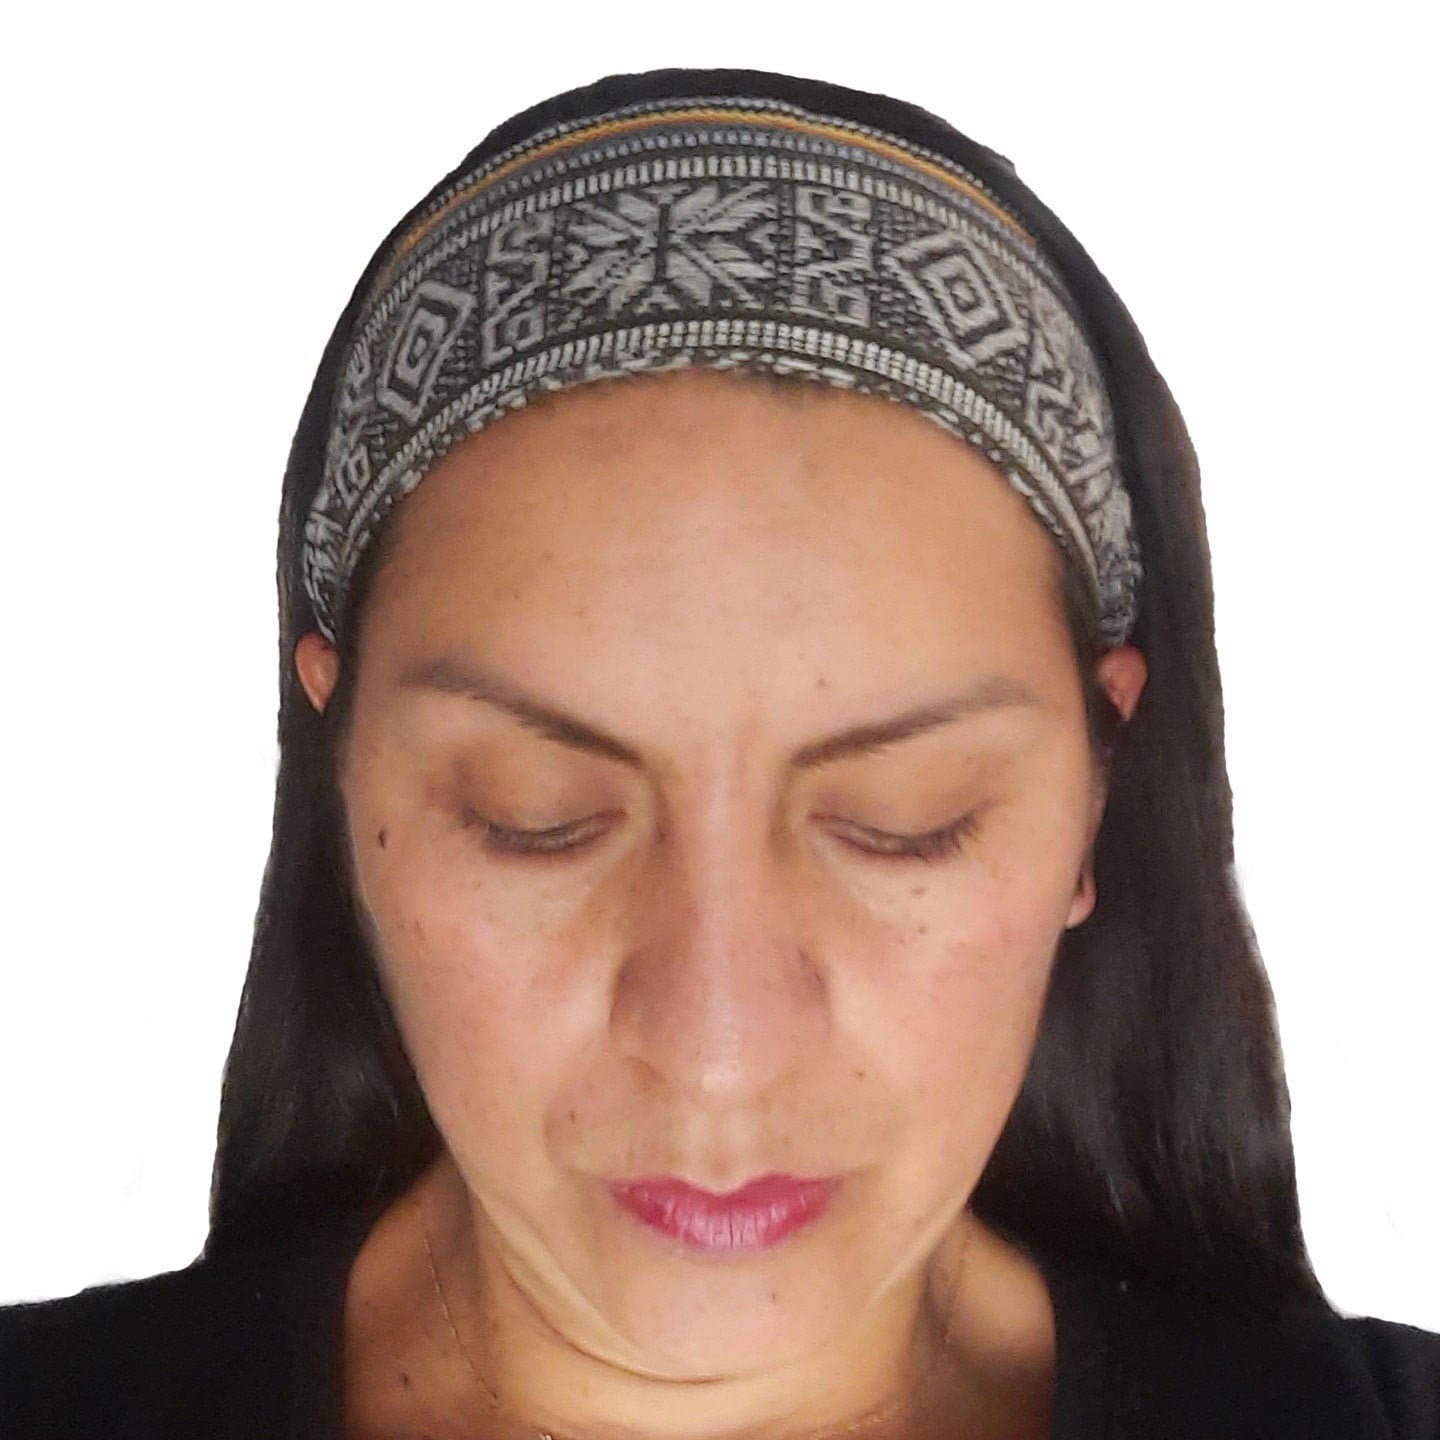 Narrow Skinny Headband for Women | Black Gray